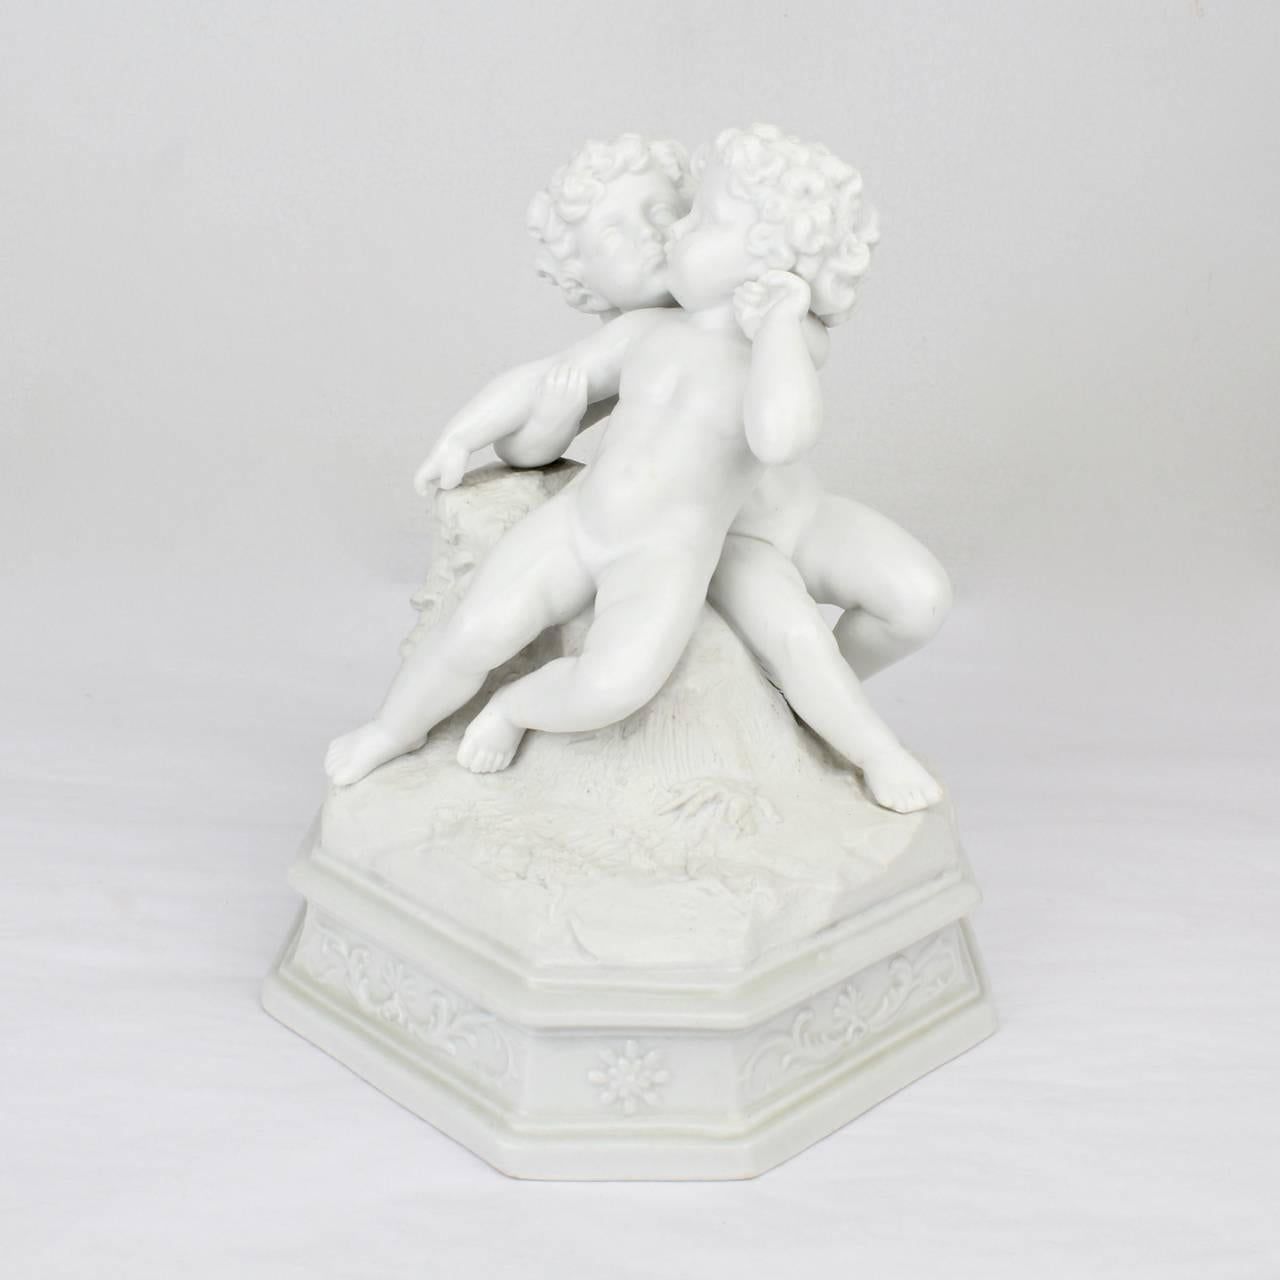 Eine wunderbare antike Figur aus dem 19. Jahrhundert, die zwei Putten in einer Umarmung zeigt - eine Putte in den Armen der anderen, die Gesichter in zärtlichem Abstand.

Wahrscheinlich französisch mit glasiertem Sockel und Biskuitplatte.